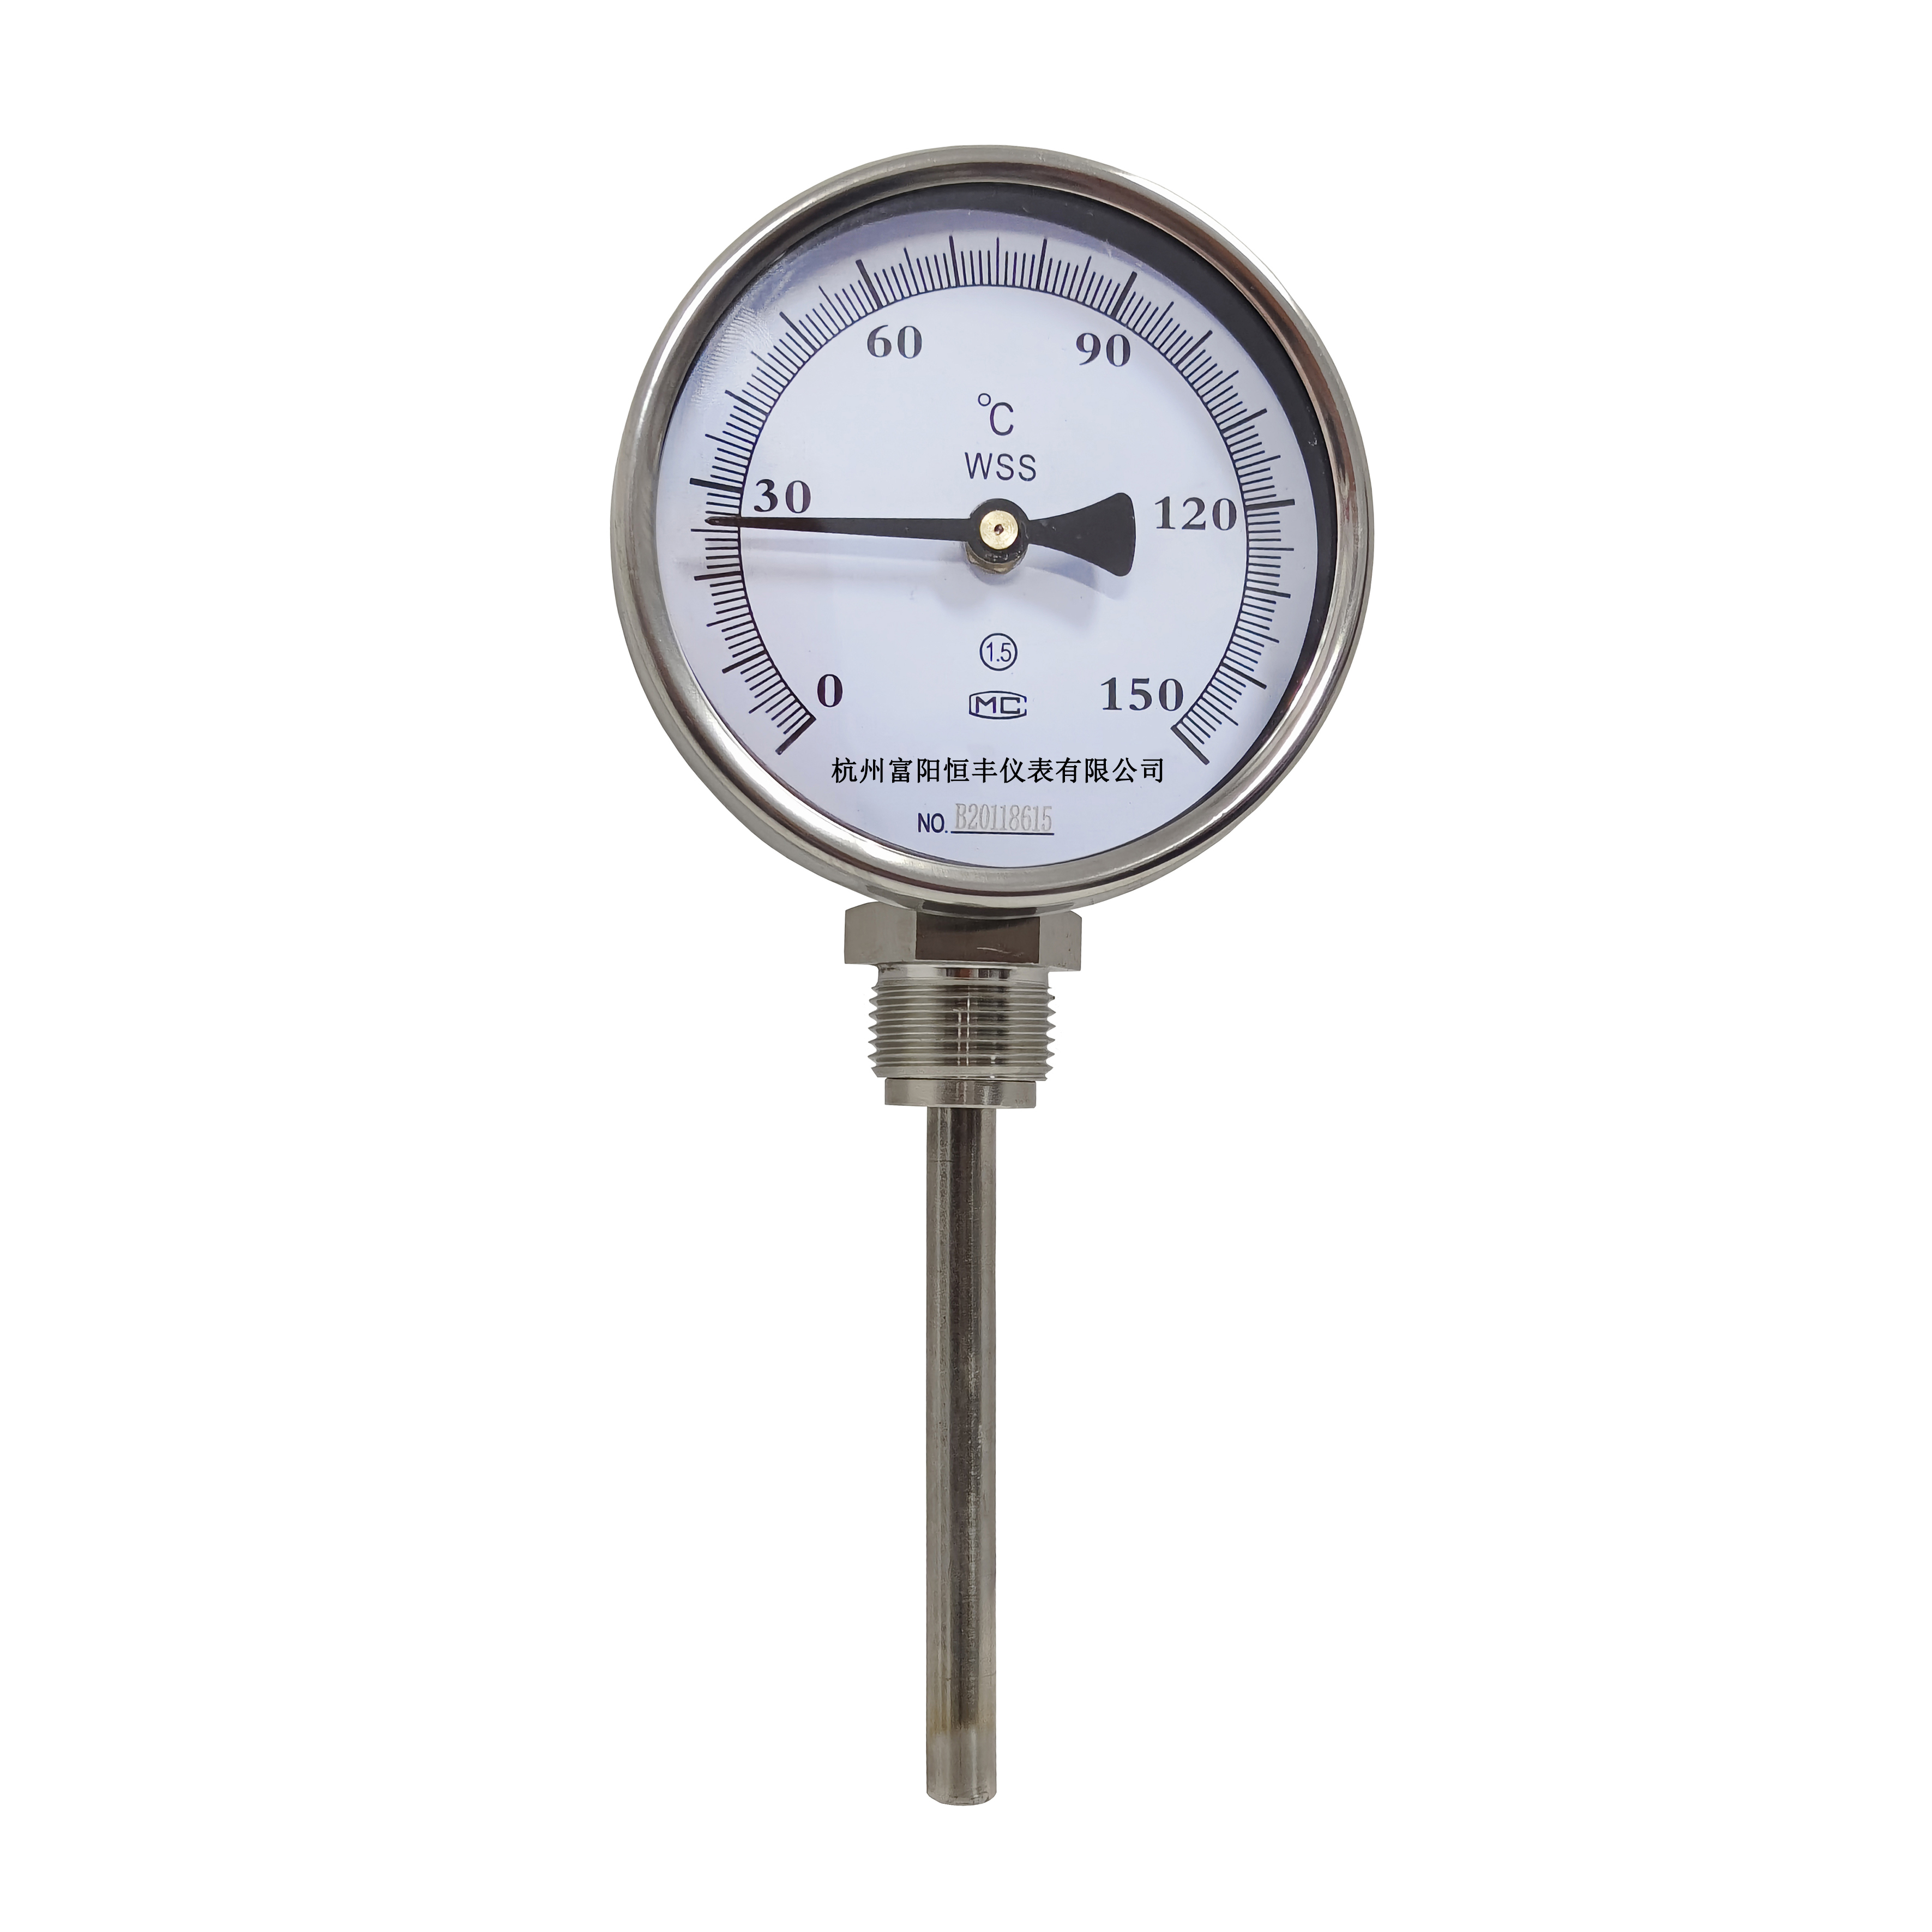 WSS bimetal thermometer